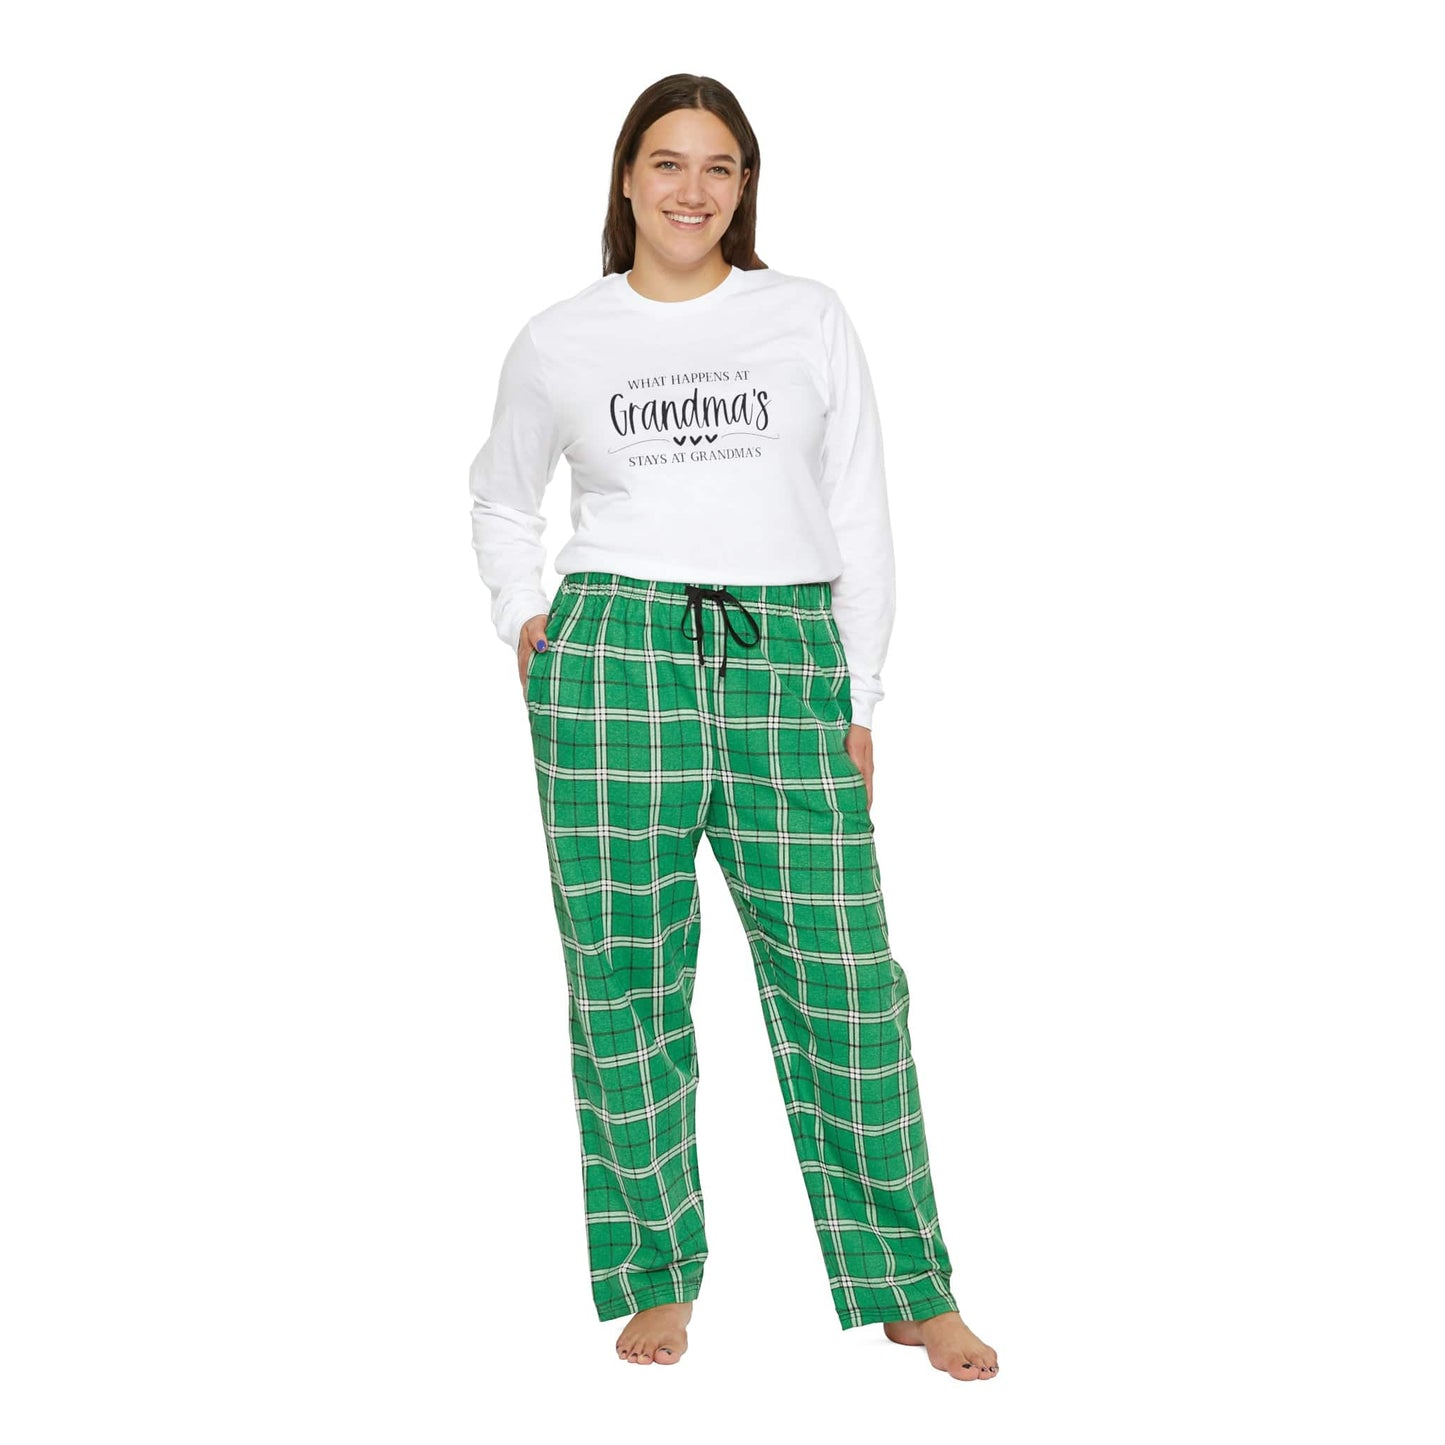 What Happens At Grandma's Stays At Grandma's Women's Long Sleeve Pajama Set